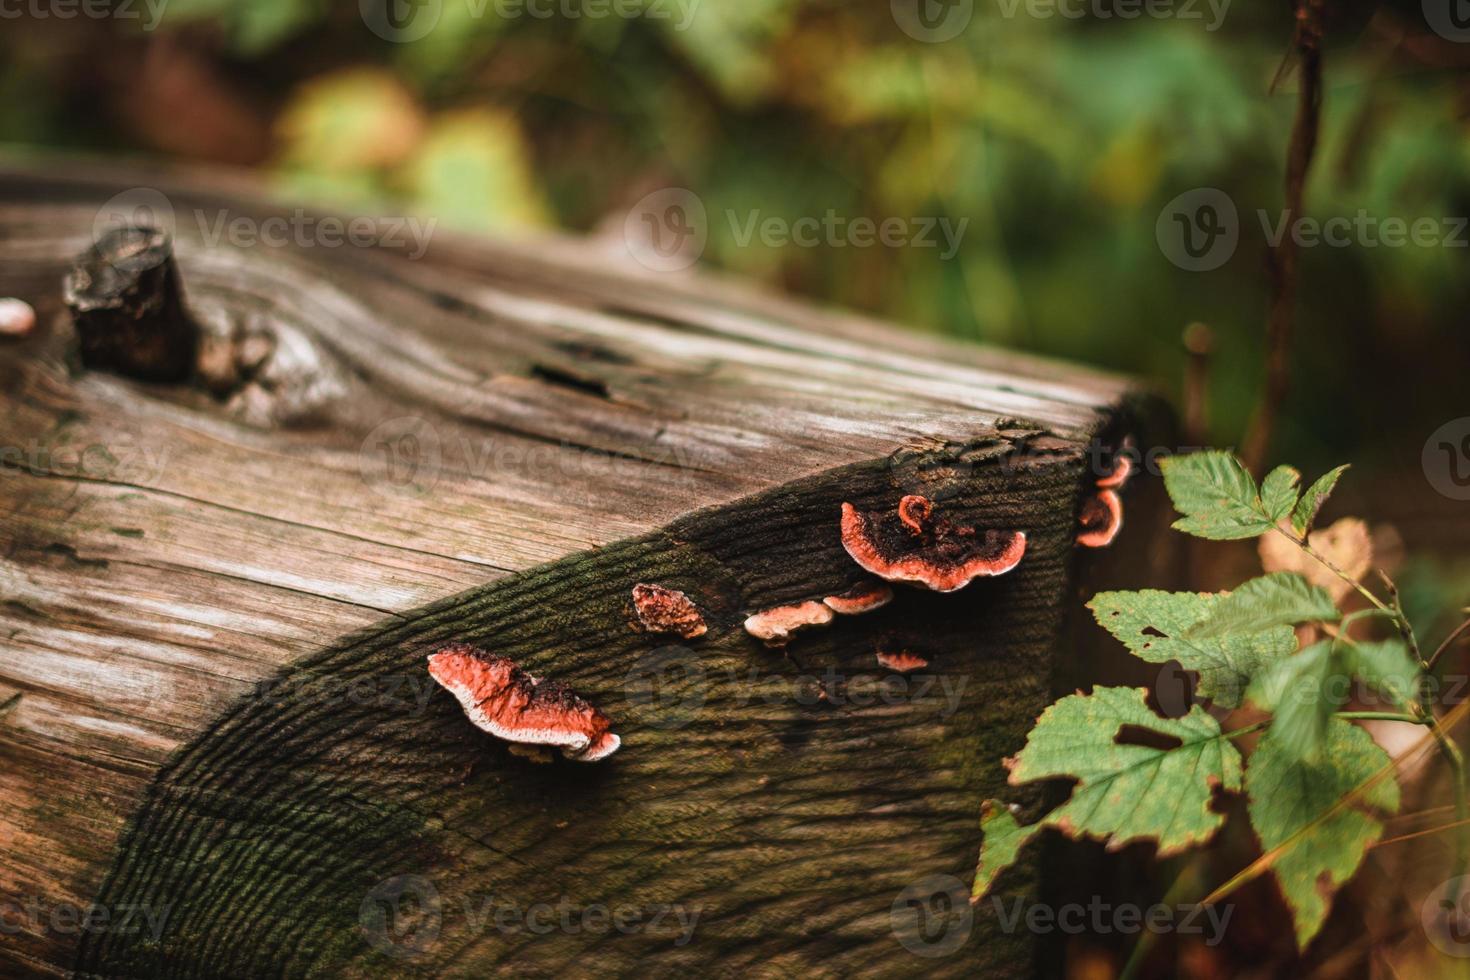 cogumelos em uma tronco dentro uma floresta foto